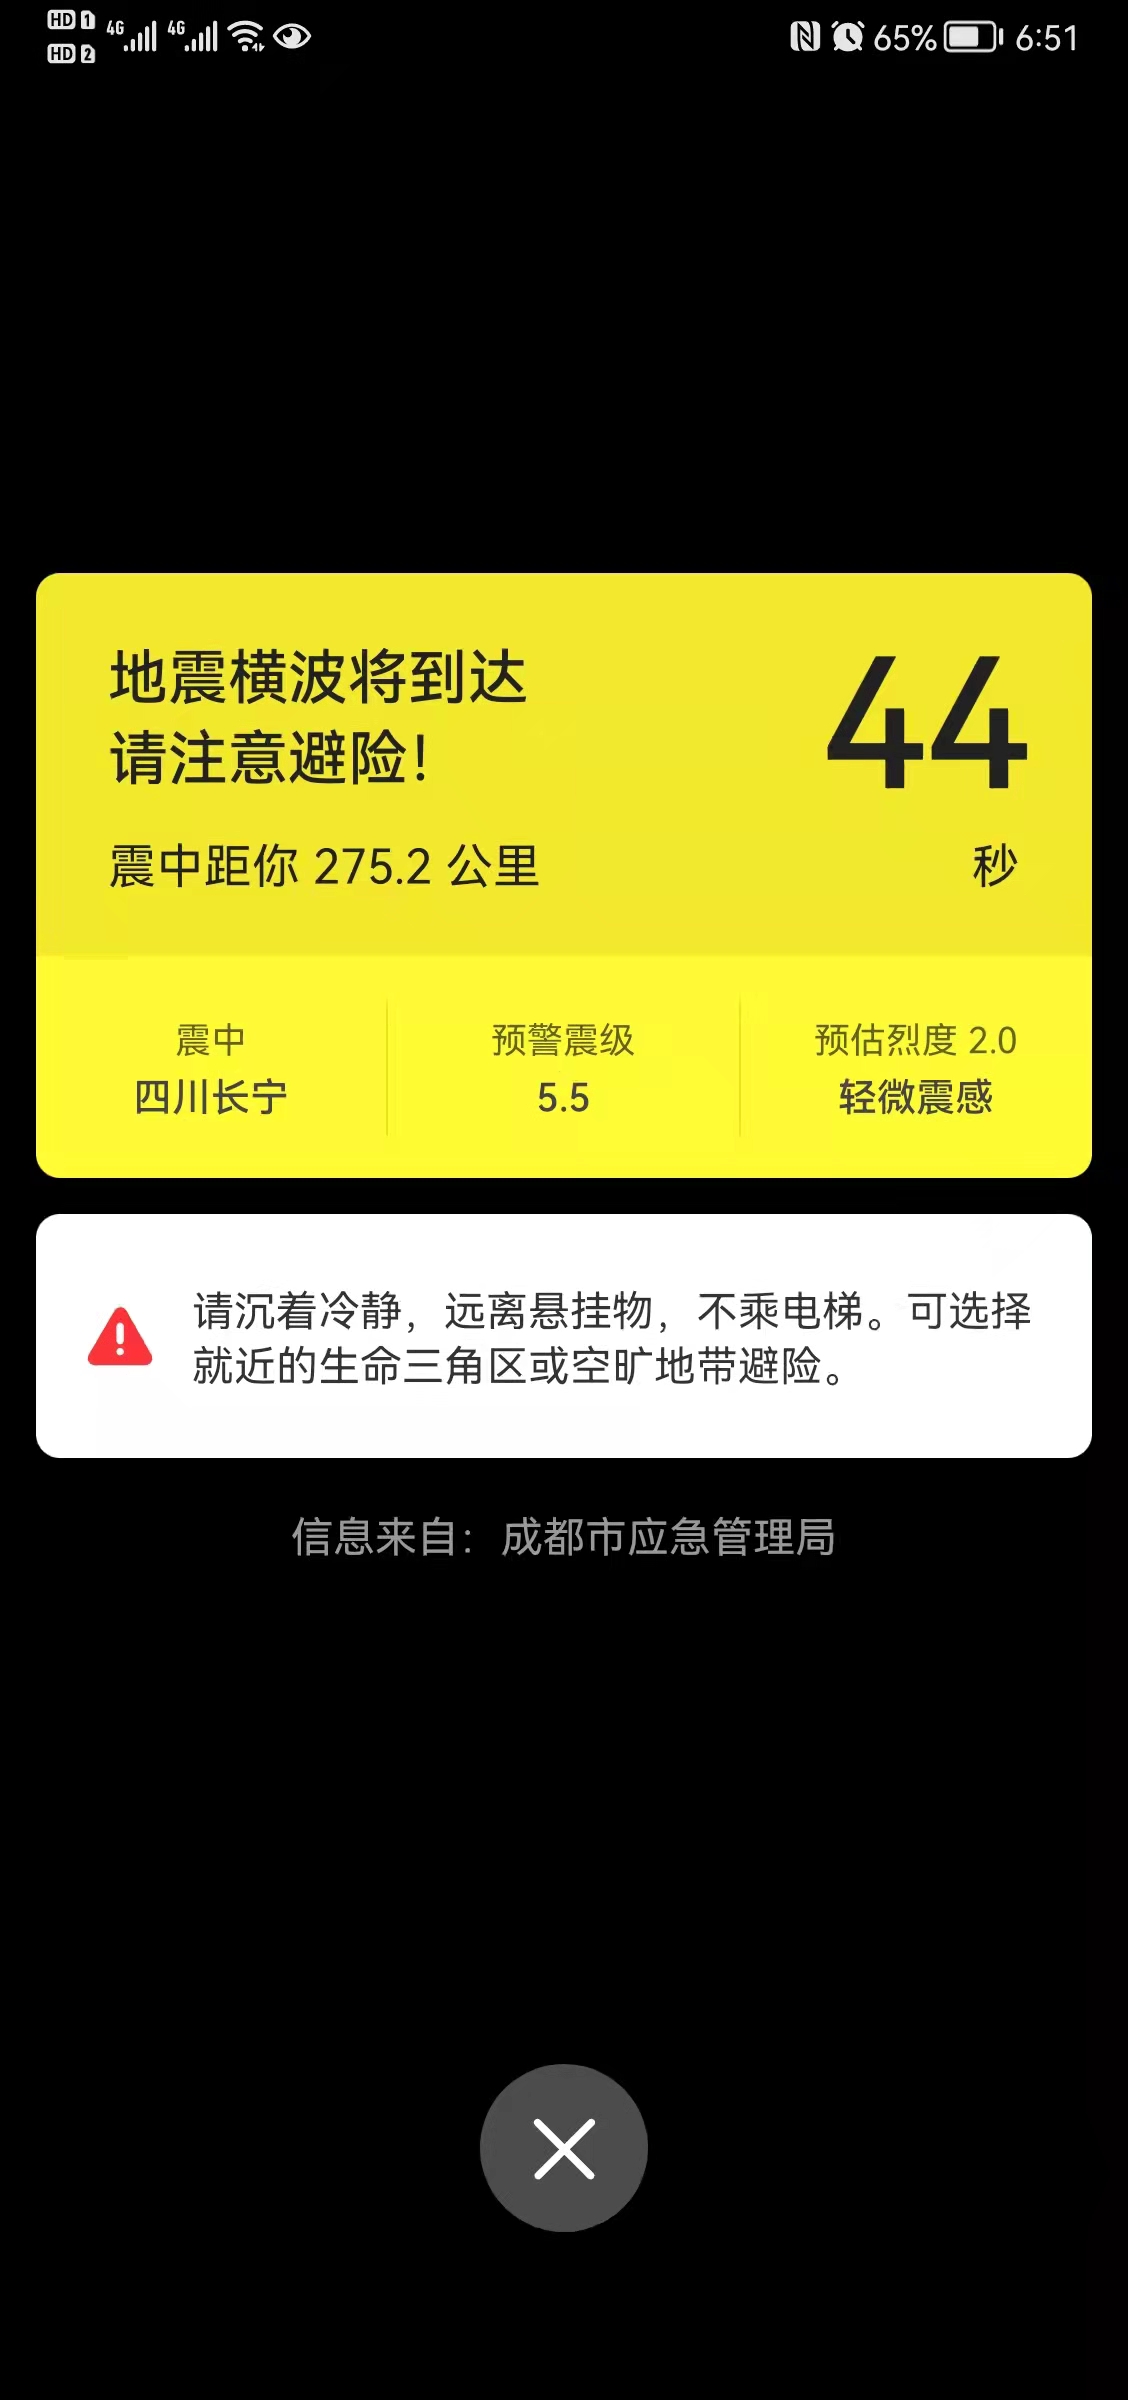 四川长宁县发生5.5级地震